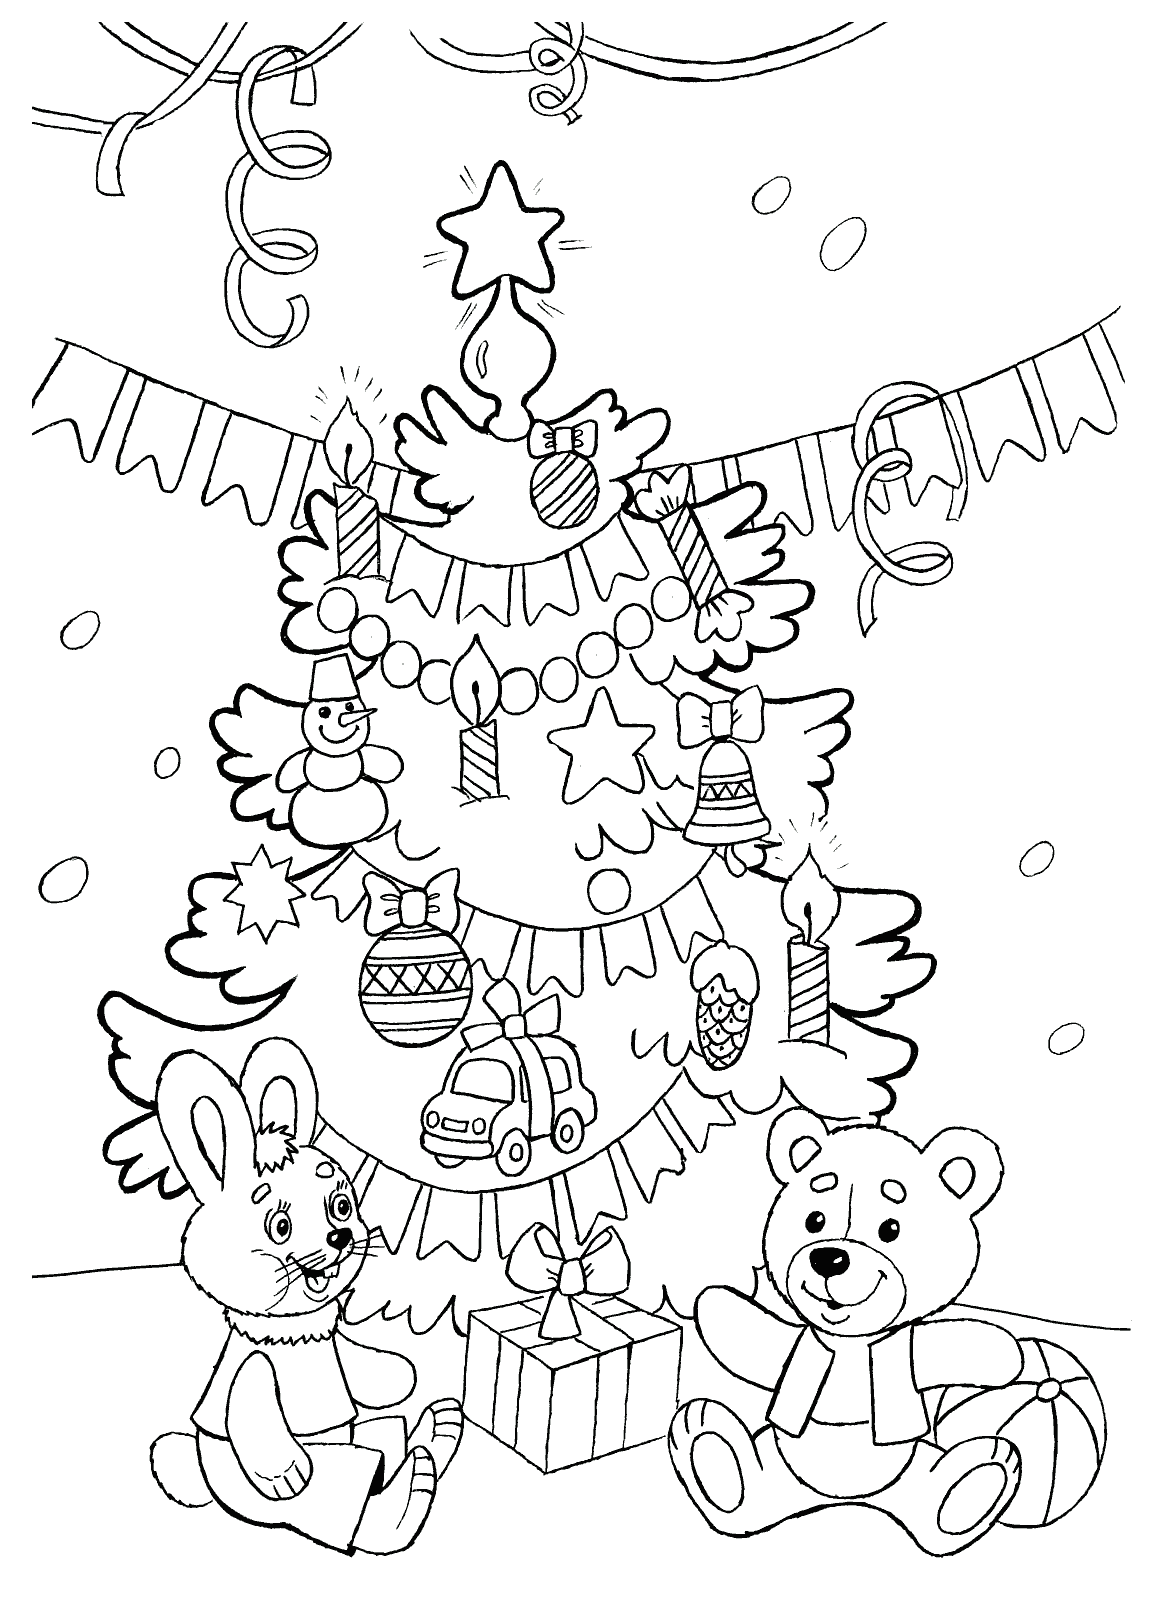 Новогодняя раскраска для девочки 6-7 лет, распечатать бесплатно